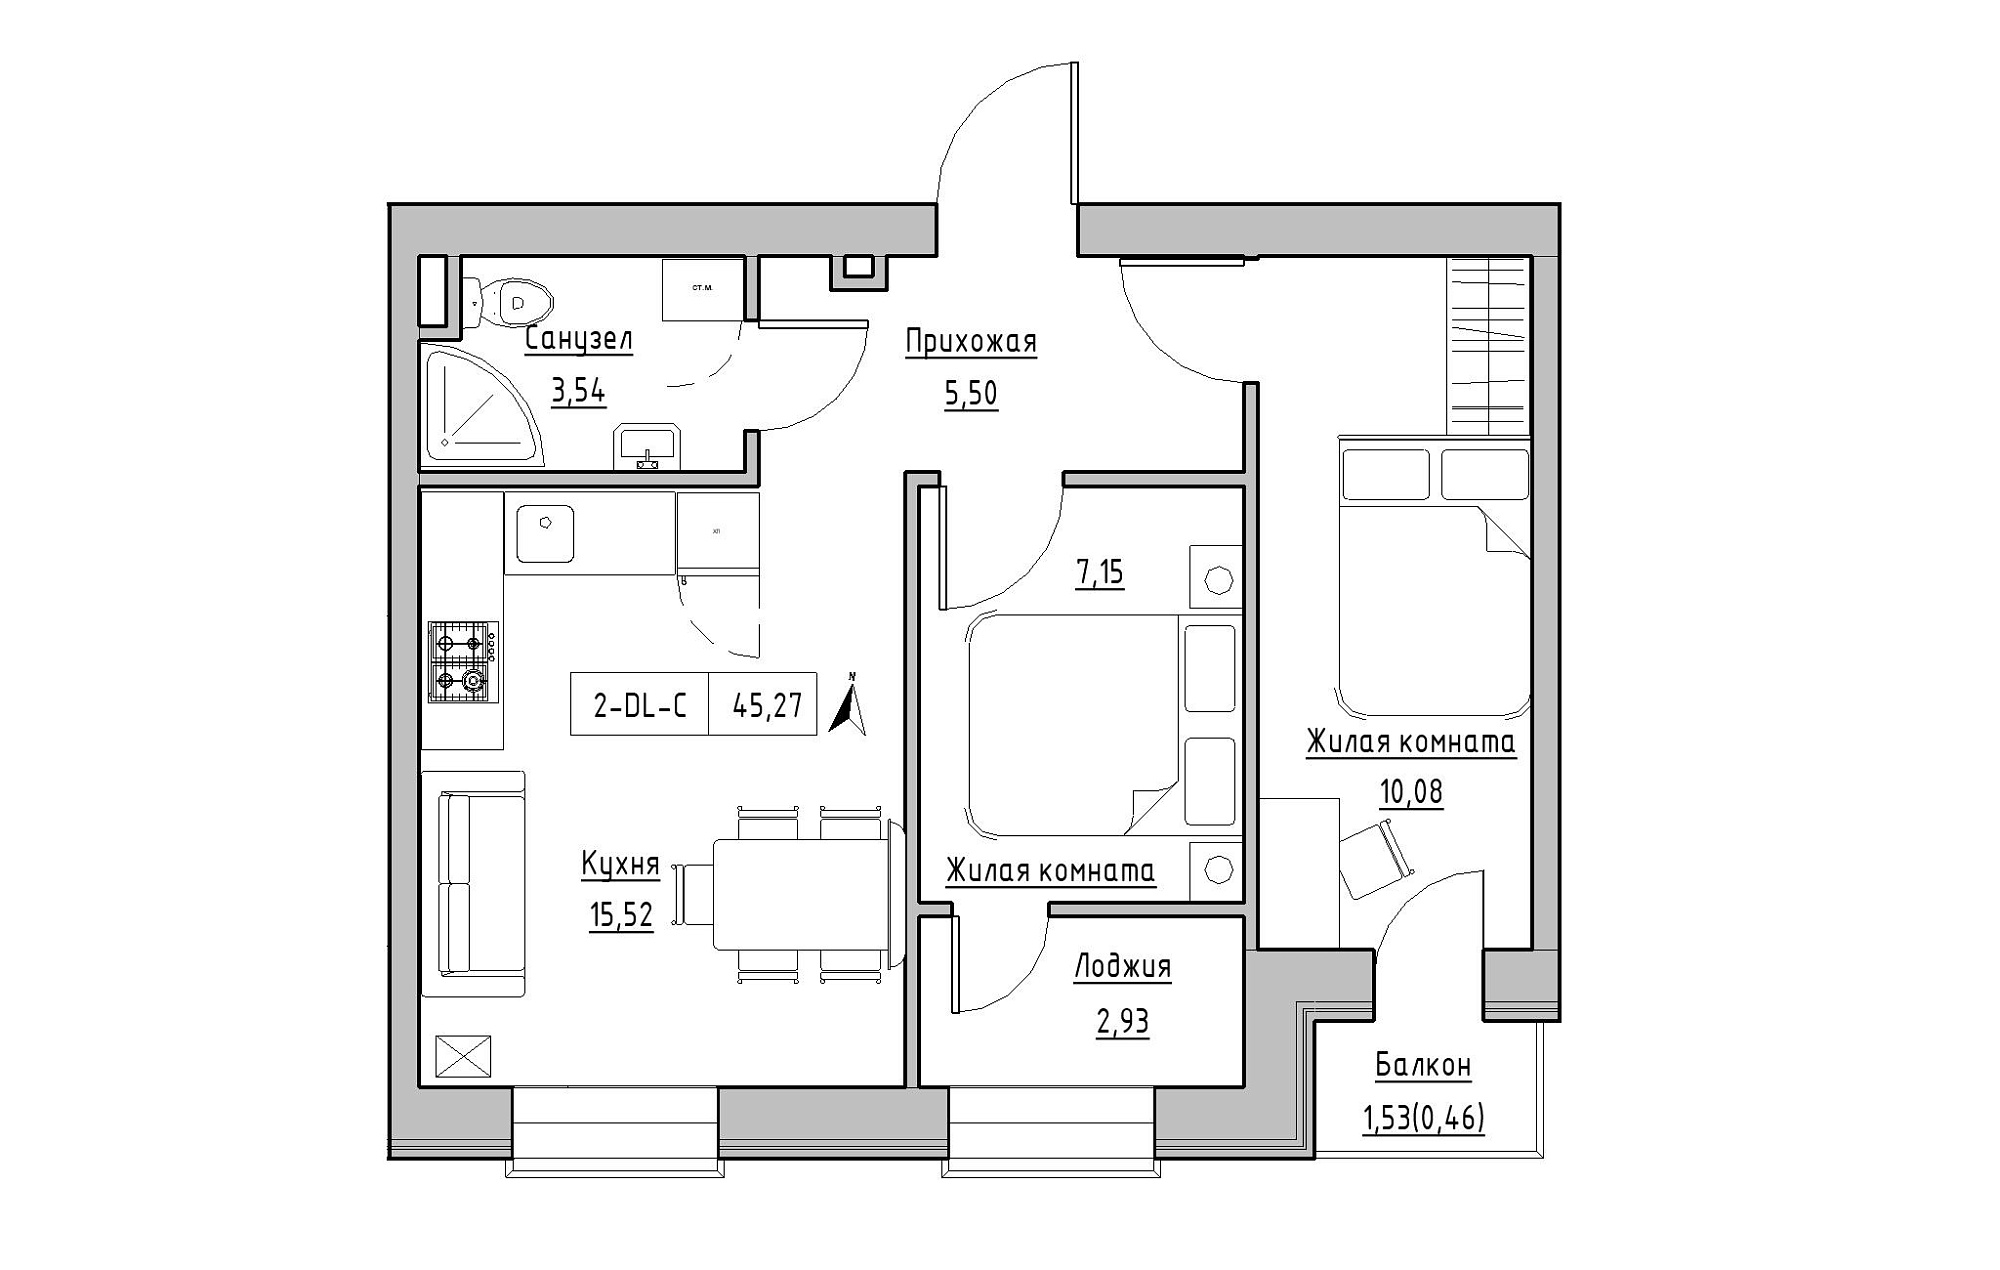 Планування 2-к квартира площею 45.27м2, KS-019-04/0008.